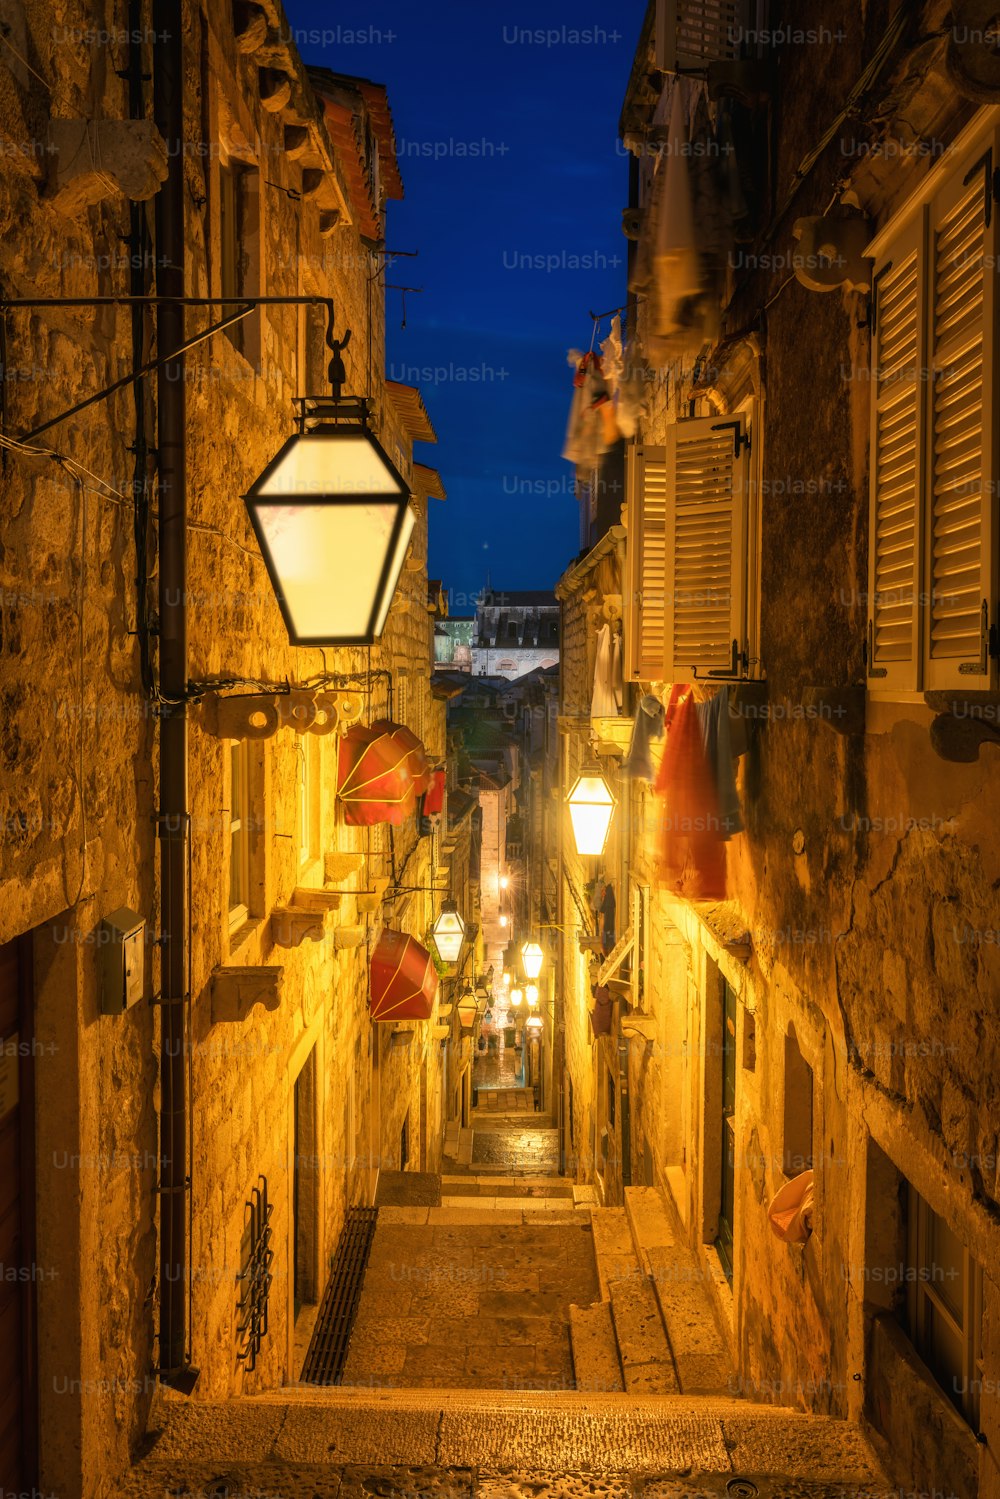 夜のクロアチアのドゥブロヴニク旧市街の有名な狭い路地 - クロアチアの著名な旅行先。ドゥブロヴニク旧市街は1979年にユネスコの世界遺産に登録されました。